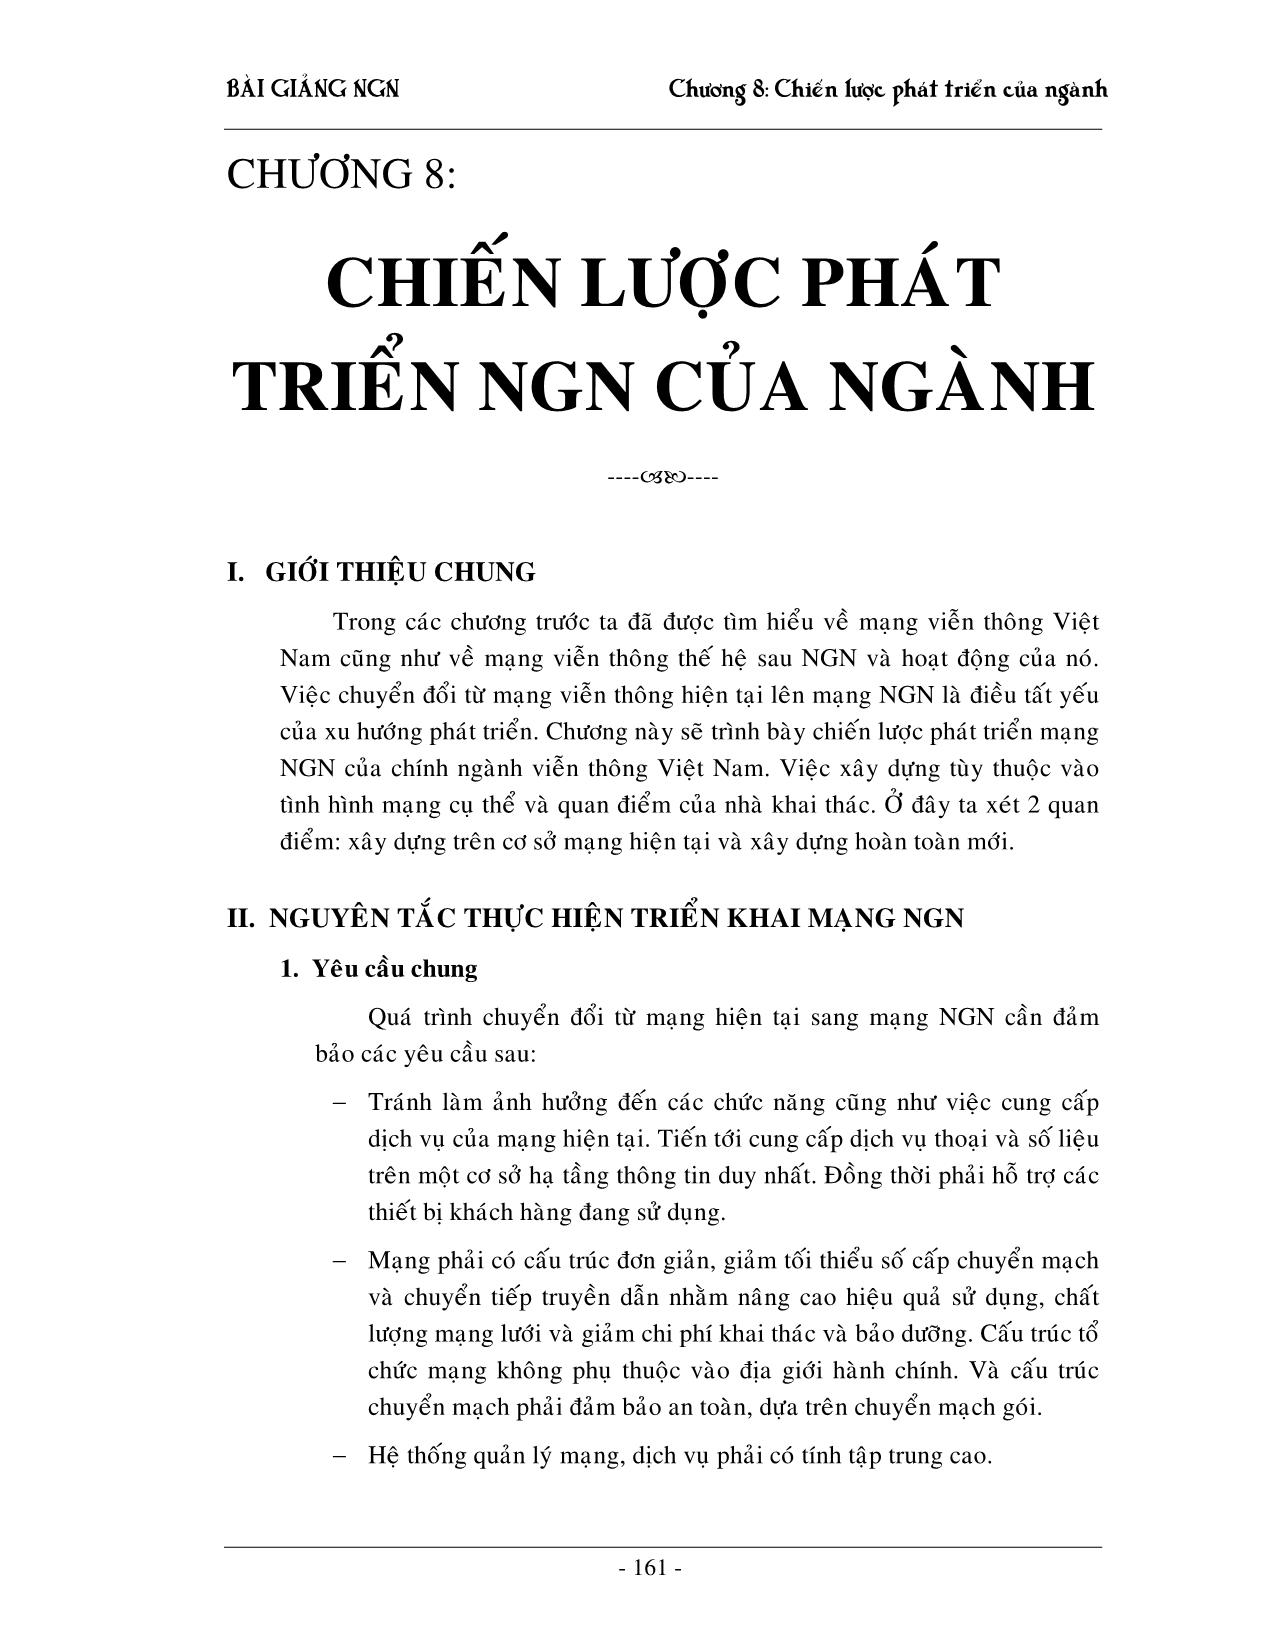 Giáo trình NGN - Chương 8: Chiến lược phát triển của ngành trang 1